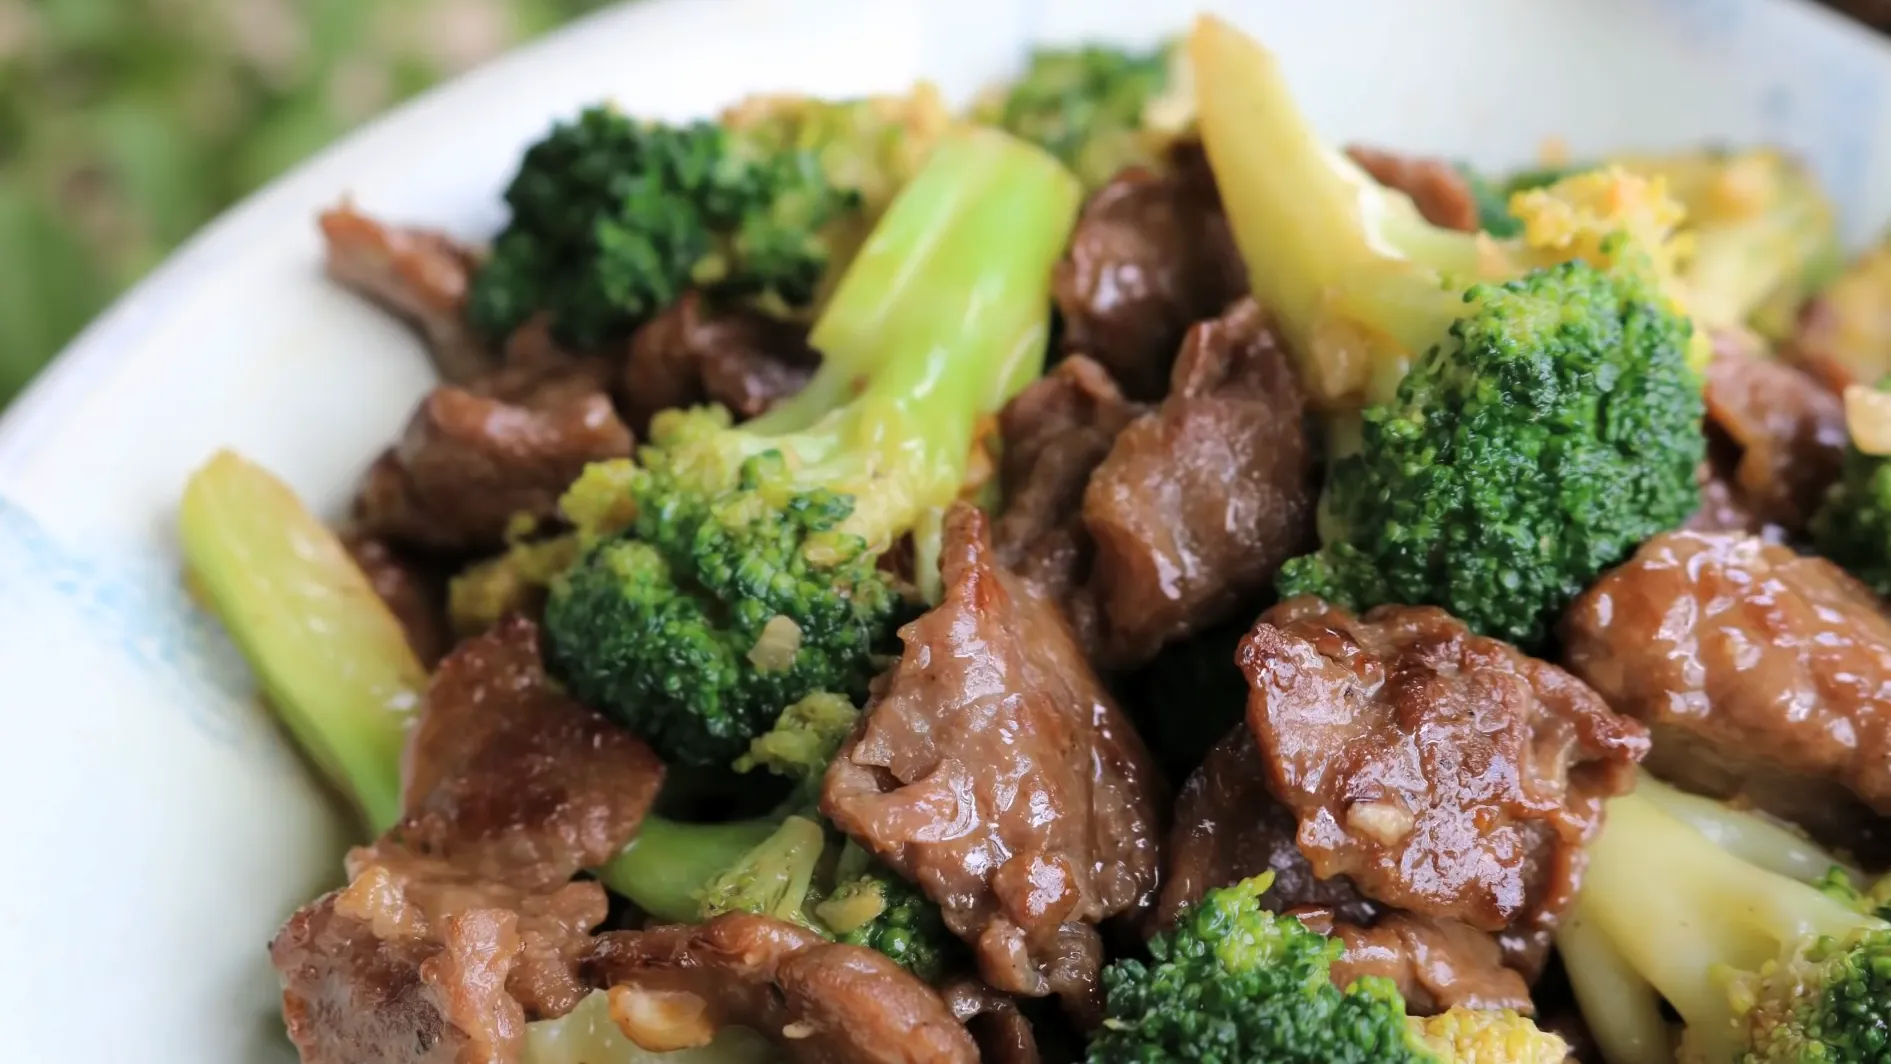 Beef Broccoli Recipe Hawaii